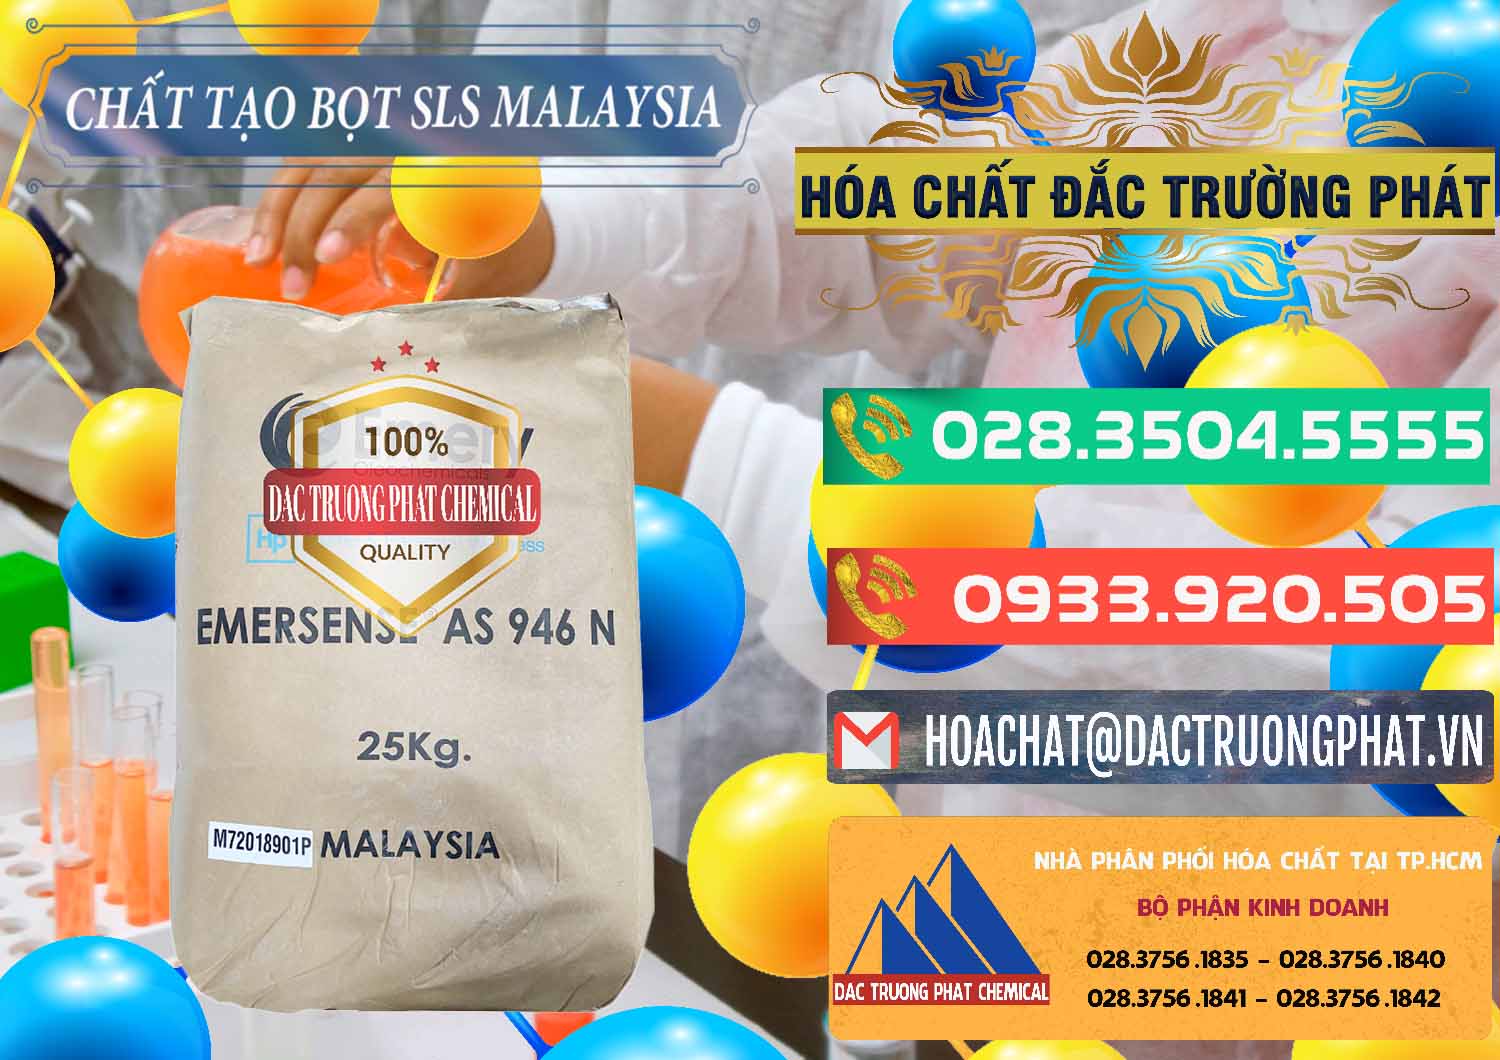 Nơi bán Chất Tạo Bọt SLS Emery - Emersense AS 946N Mã Lai Malaysia - 0423 - Đơn vị phân phối _ bán hóa chất tại TP.HCM - congtyhoachat.com.vn